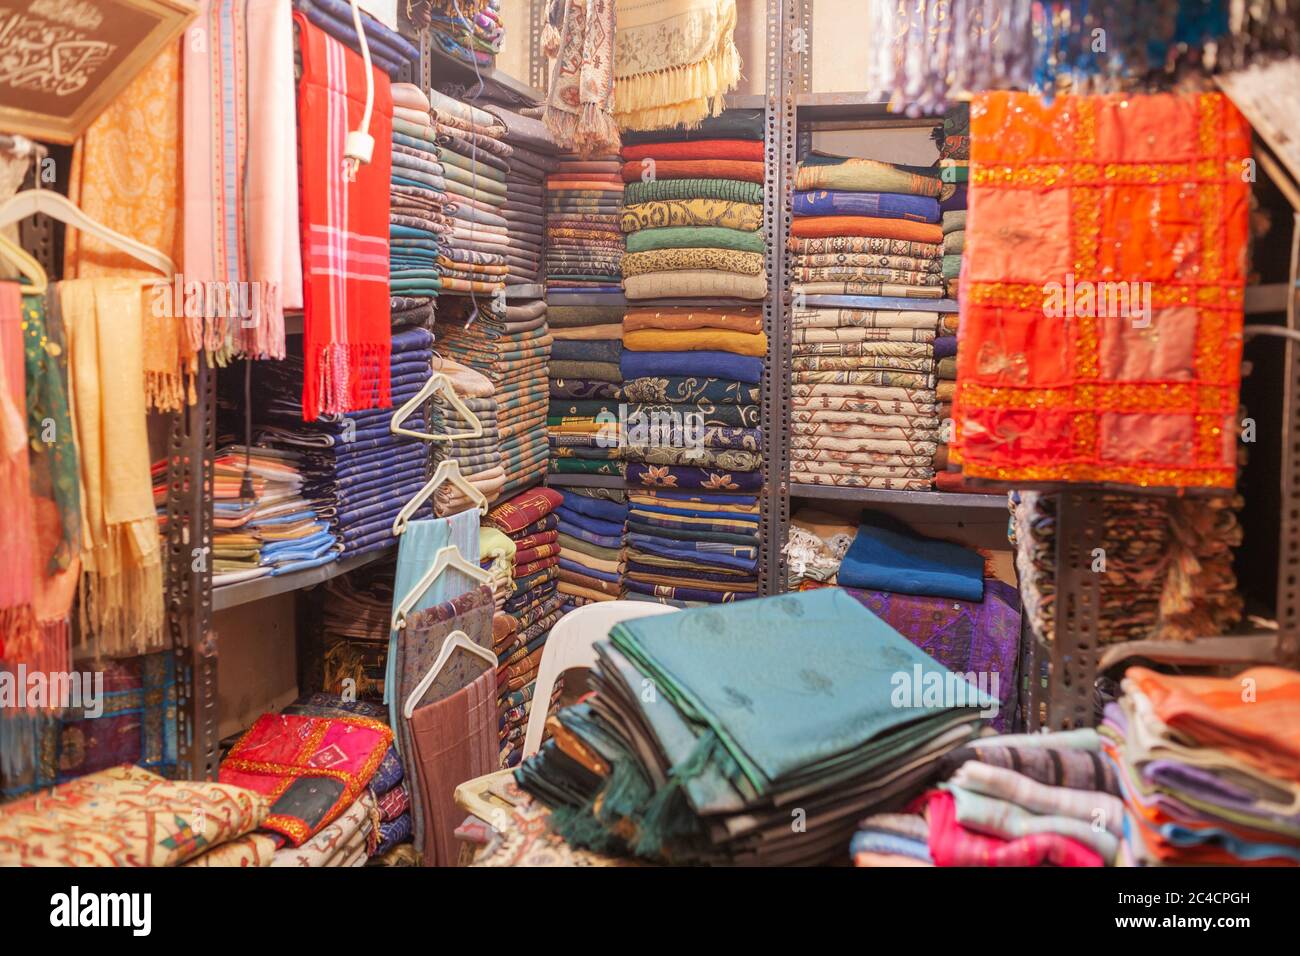 Bazar, magasin de tissus, Souks d'Alep, Syrie Banque D'Images